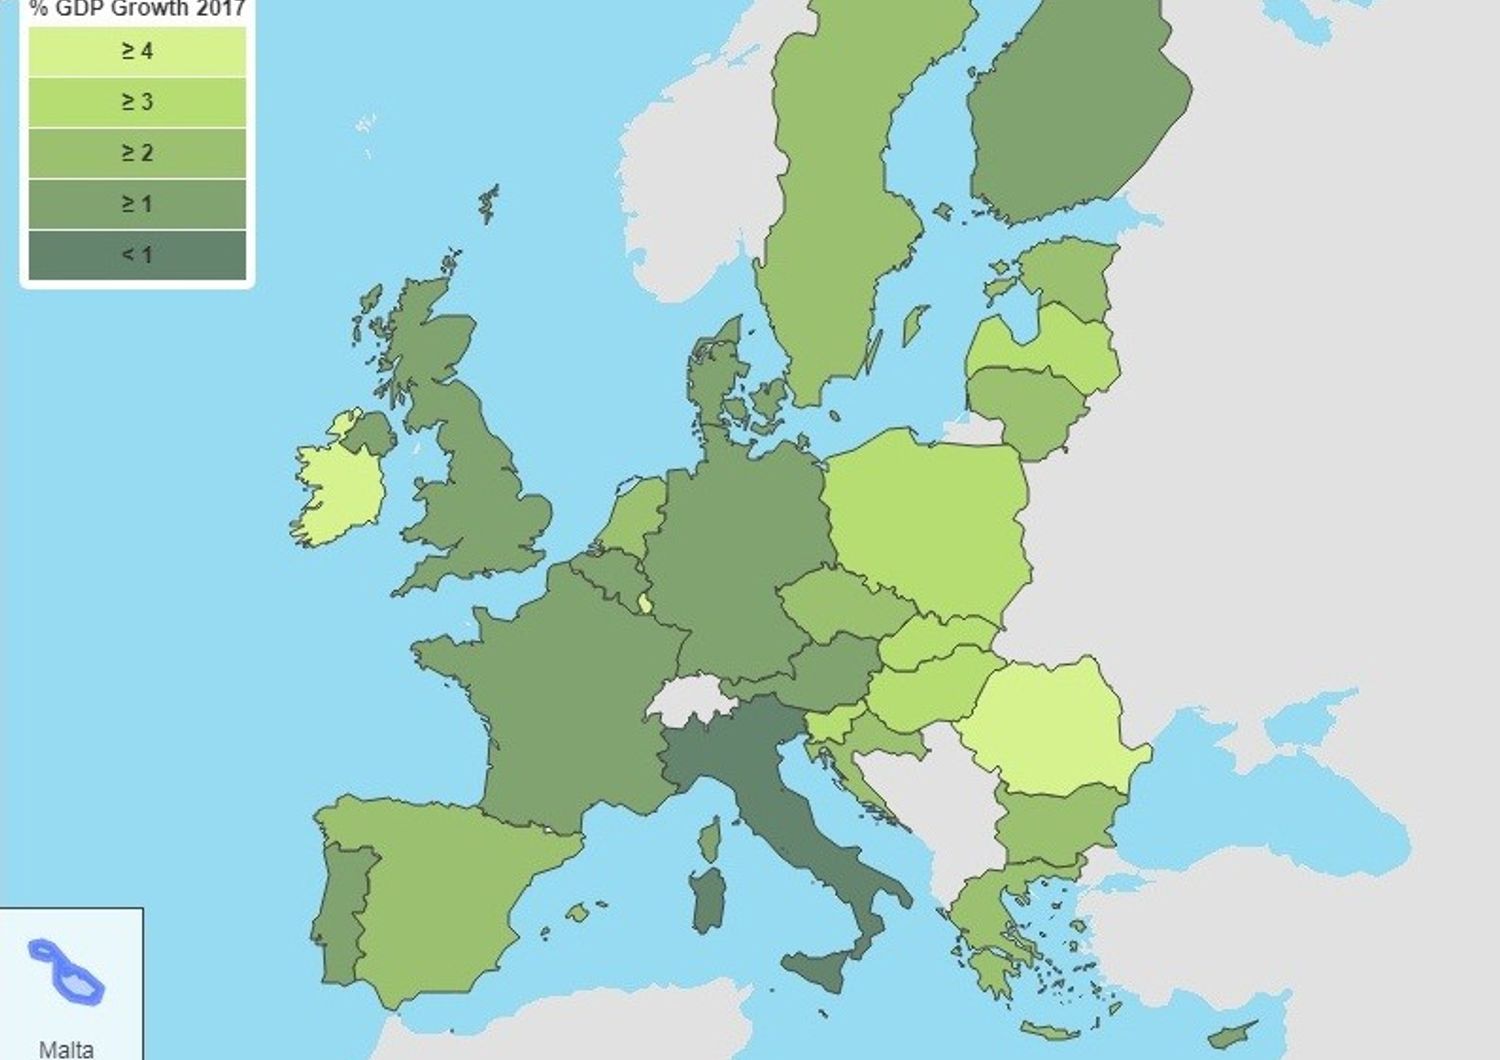 Previsioni Pil, grafico della Commissione europea